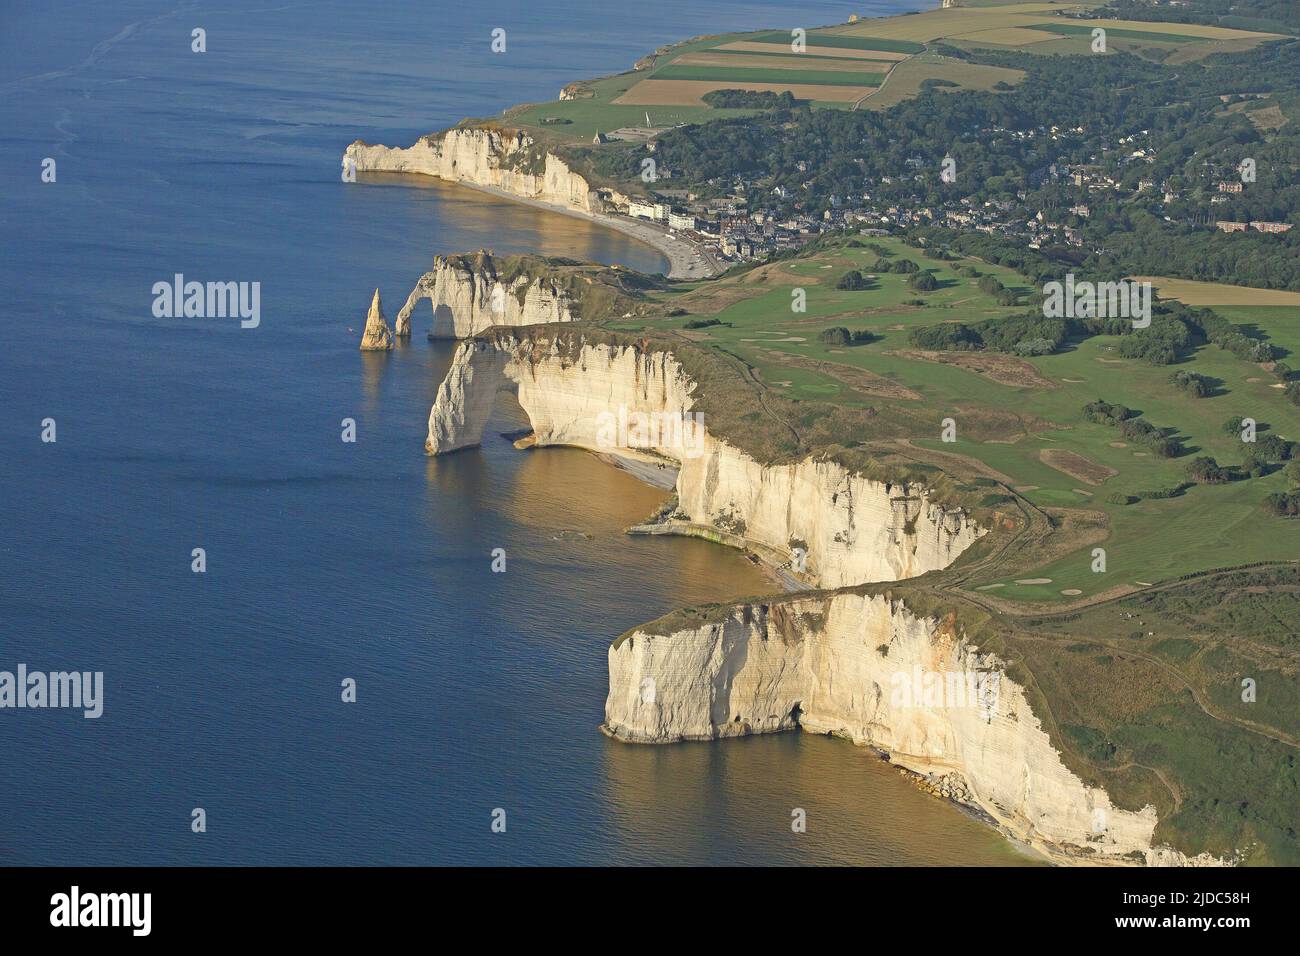 Francia, Senna Marittima, Etretat, scogliere calcaree hanno fatto di essa un luogo di turismo internazionale (vista aerea), Foto Stock